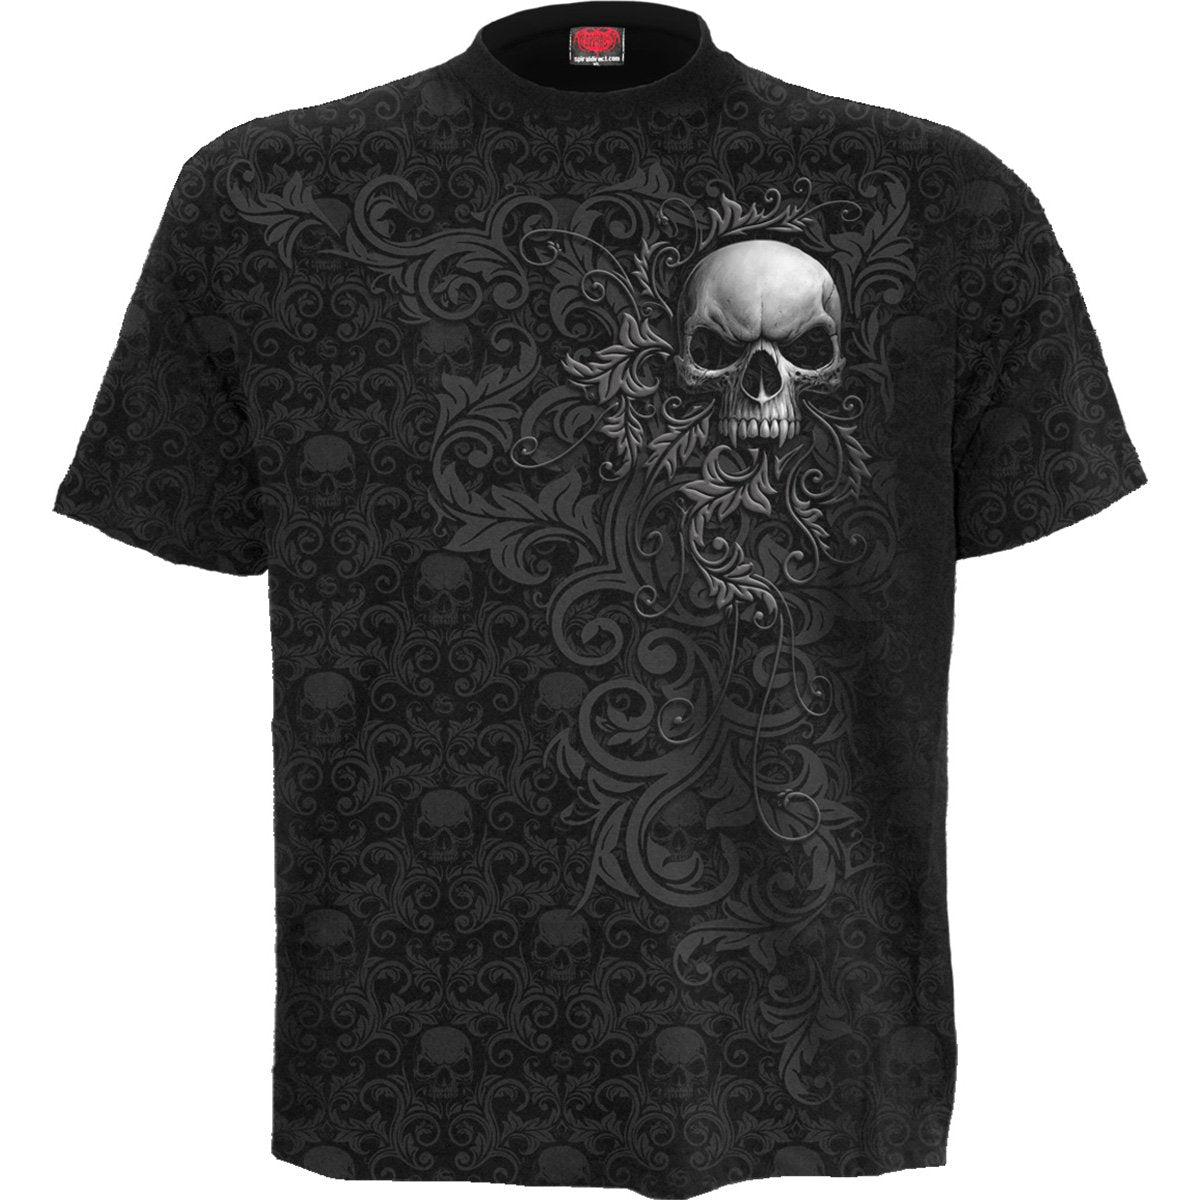 SKULL SCROLL - Scroll Impression T-Shirt - Spiral USA